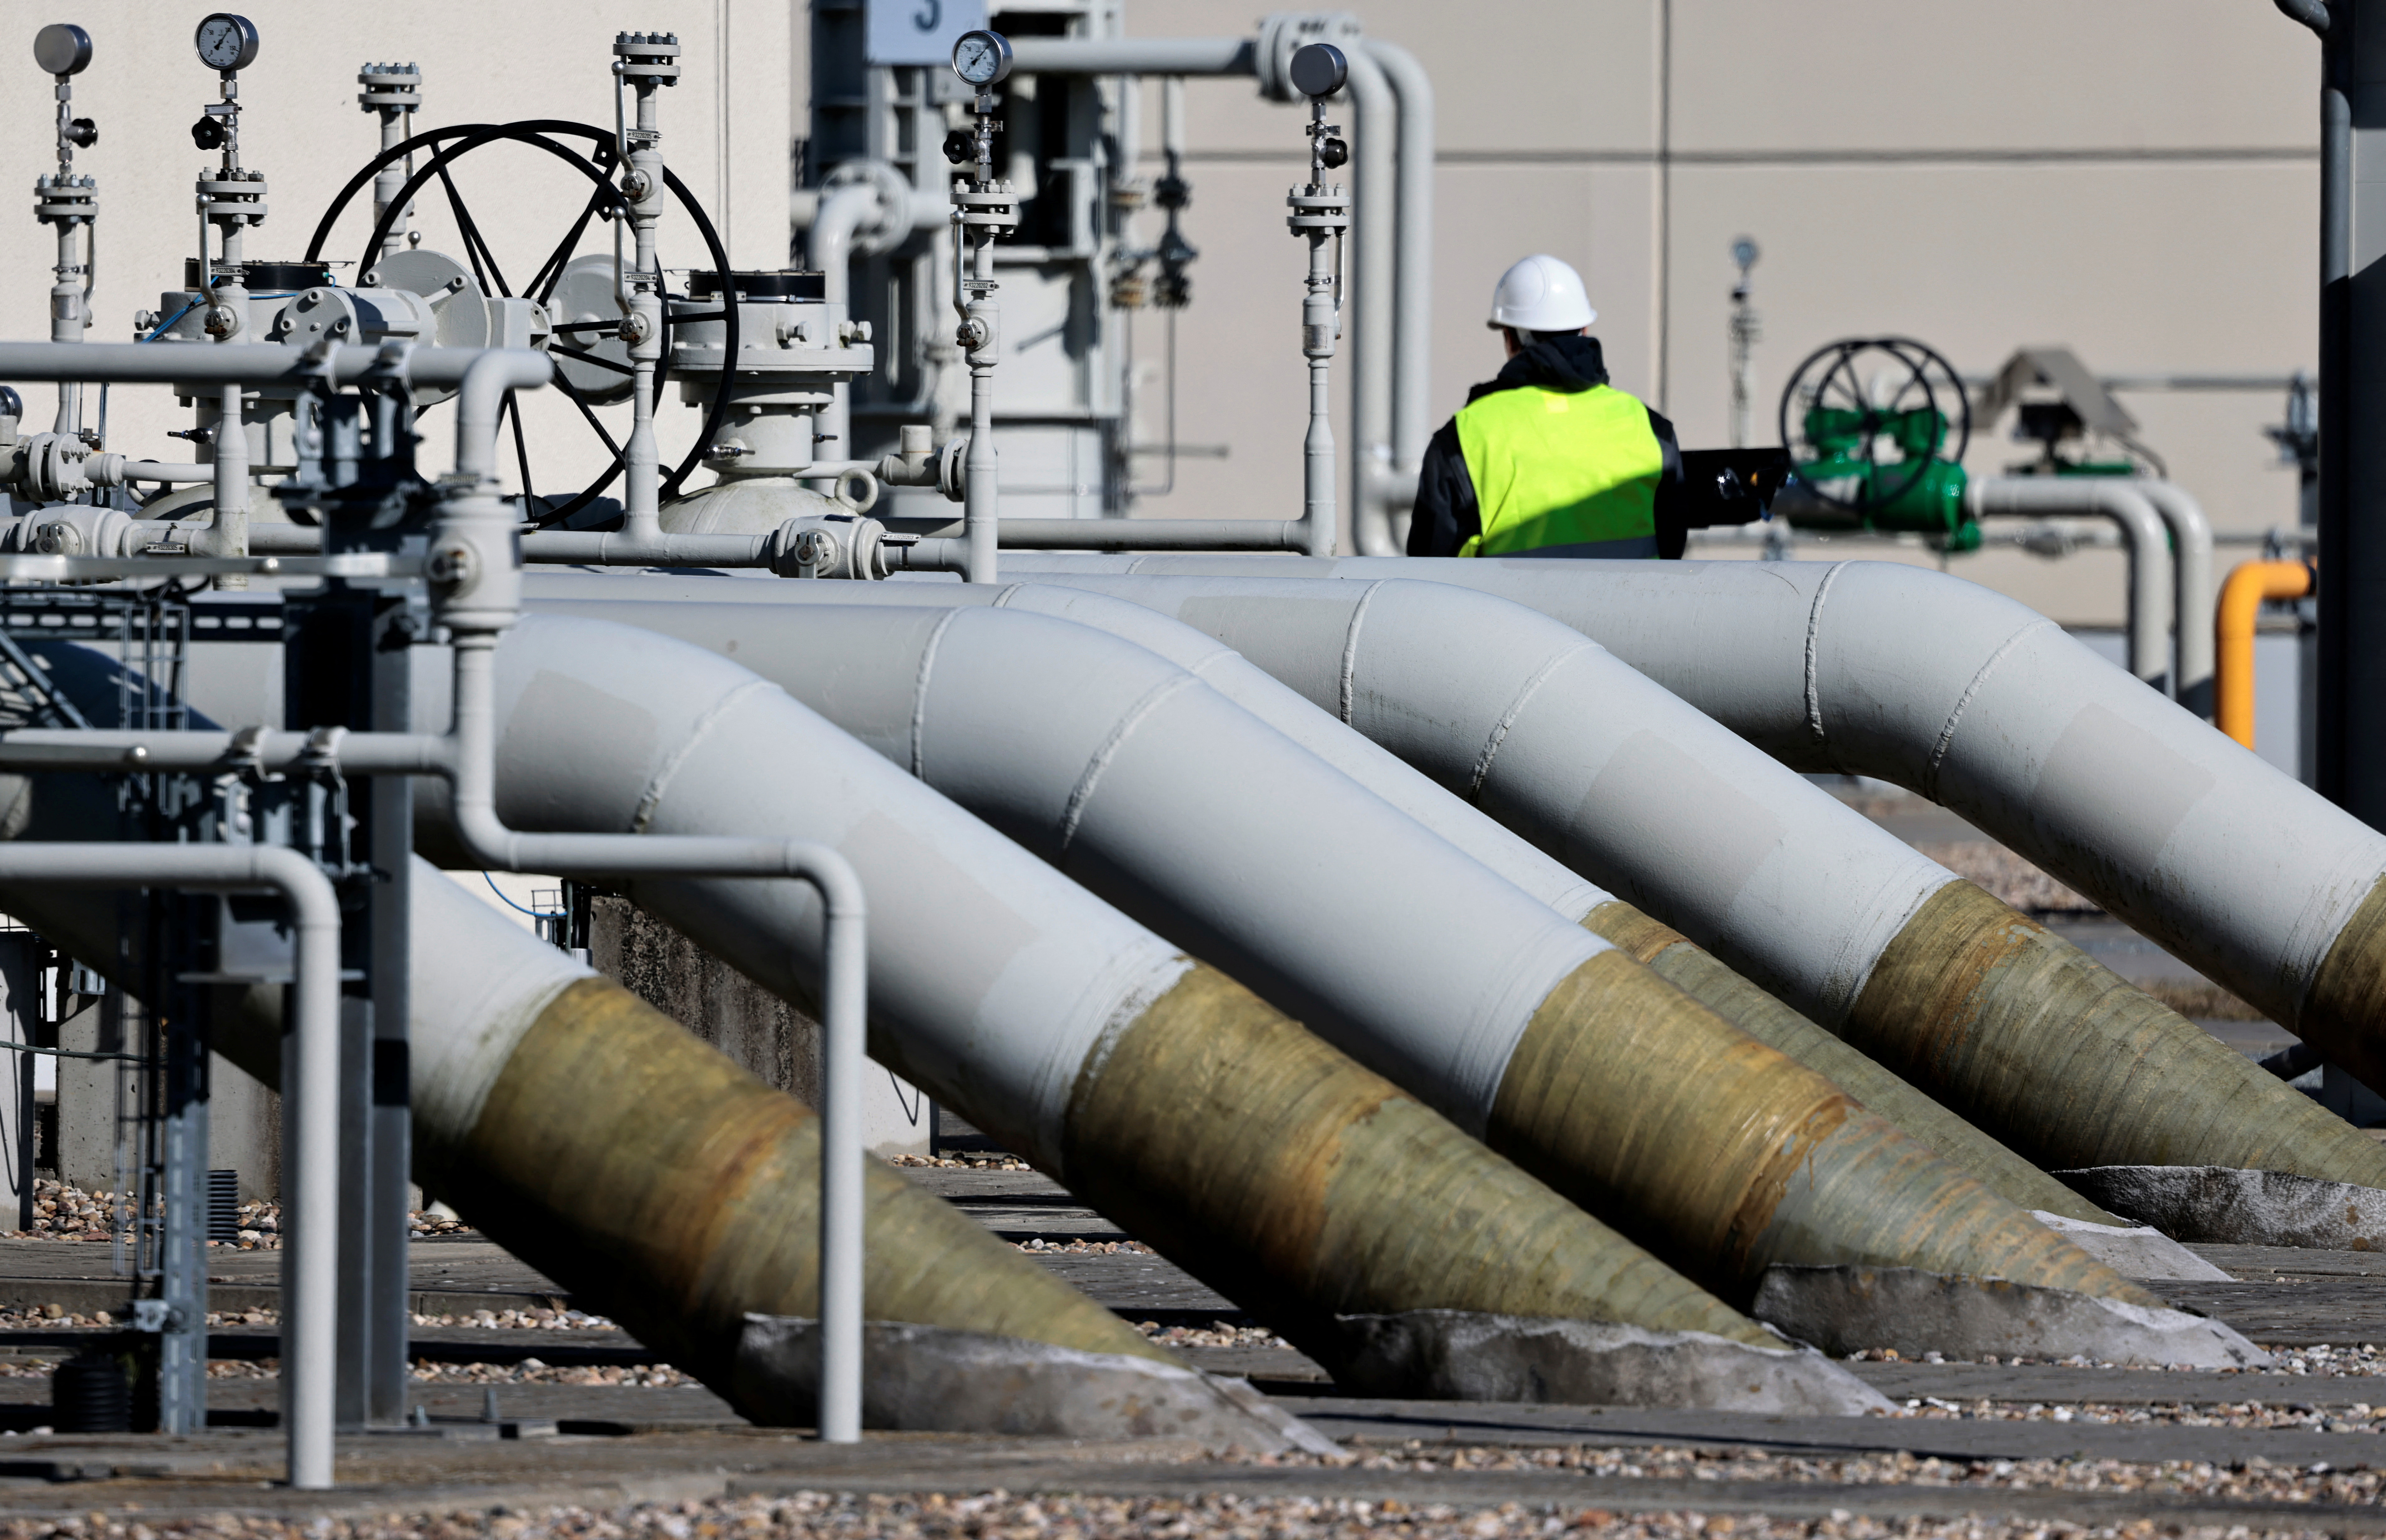 LêERFOTO: Pype by die landvalfasiliteite van die 'Nord Stream 1'-gaspypleiding is afgebeeld in Lubmin, Duitsland, 8 Maart 2022. REUTERS/Hannibal Hanschke